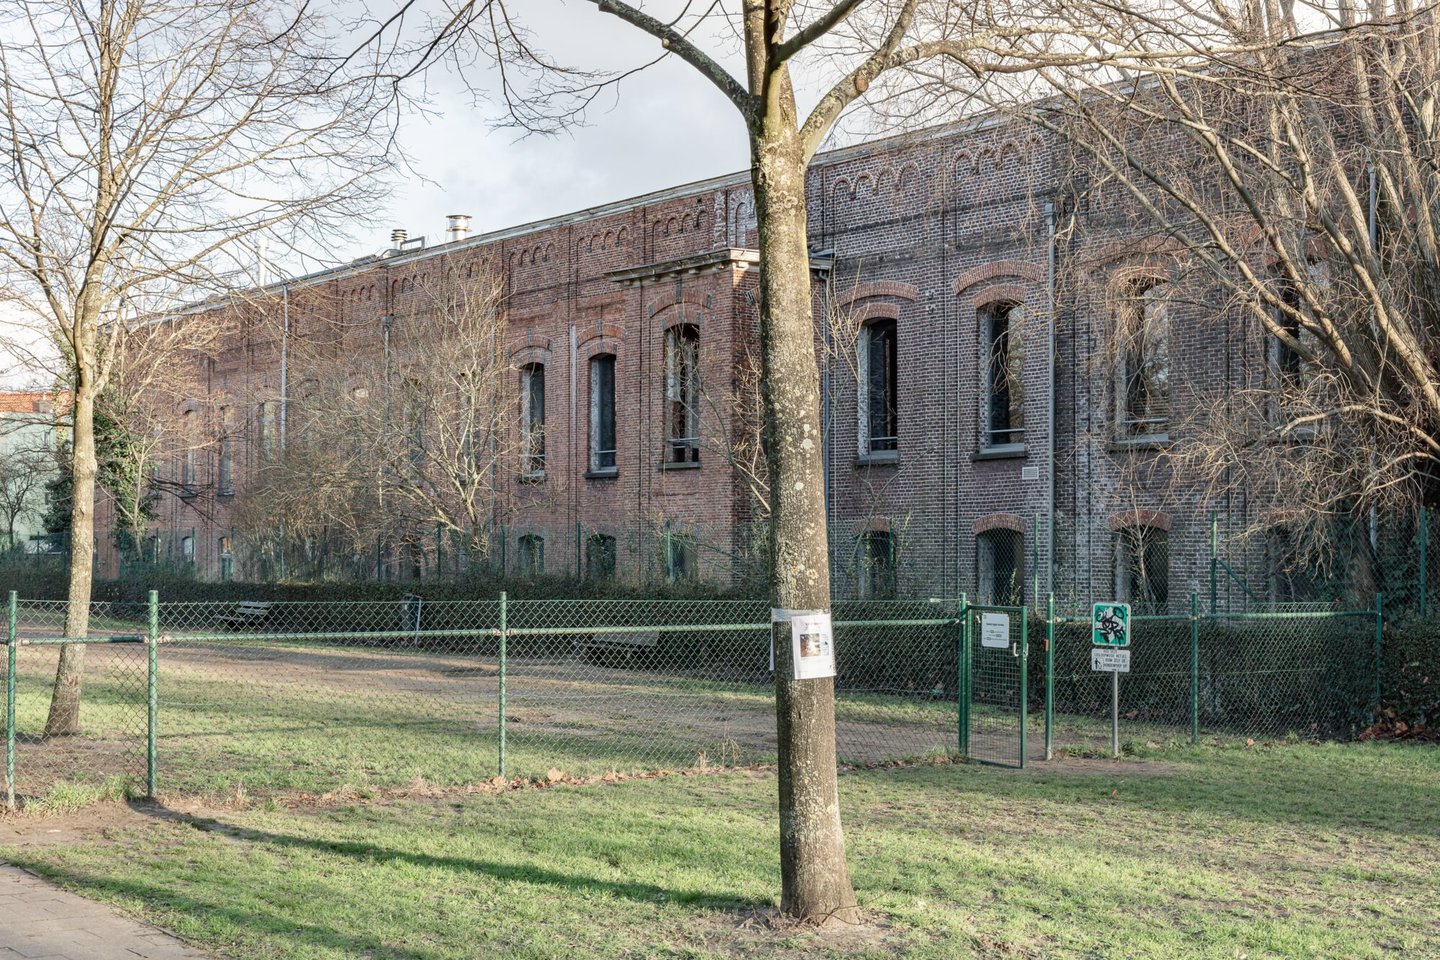 Buitenzicht van voormalige textielfabriek Florida in Gent